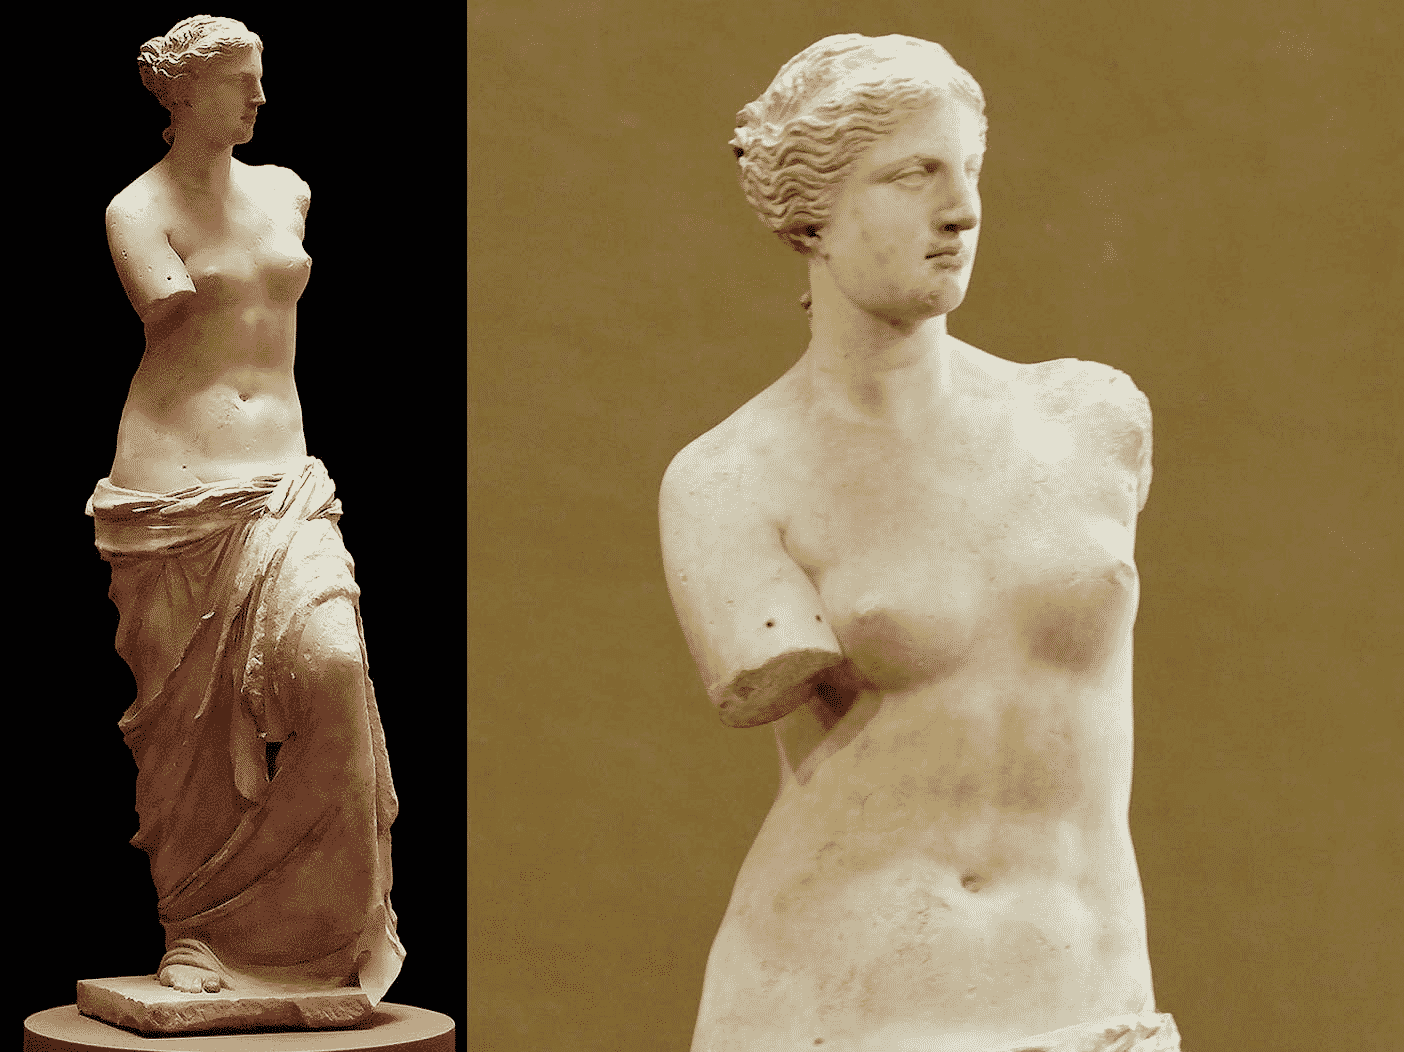 Vênus de Milo - características, história e curiosidades sobre a estátua